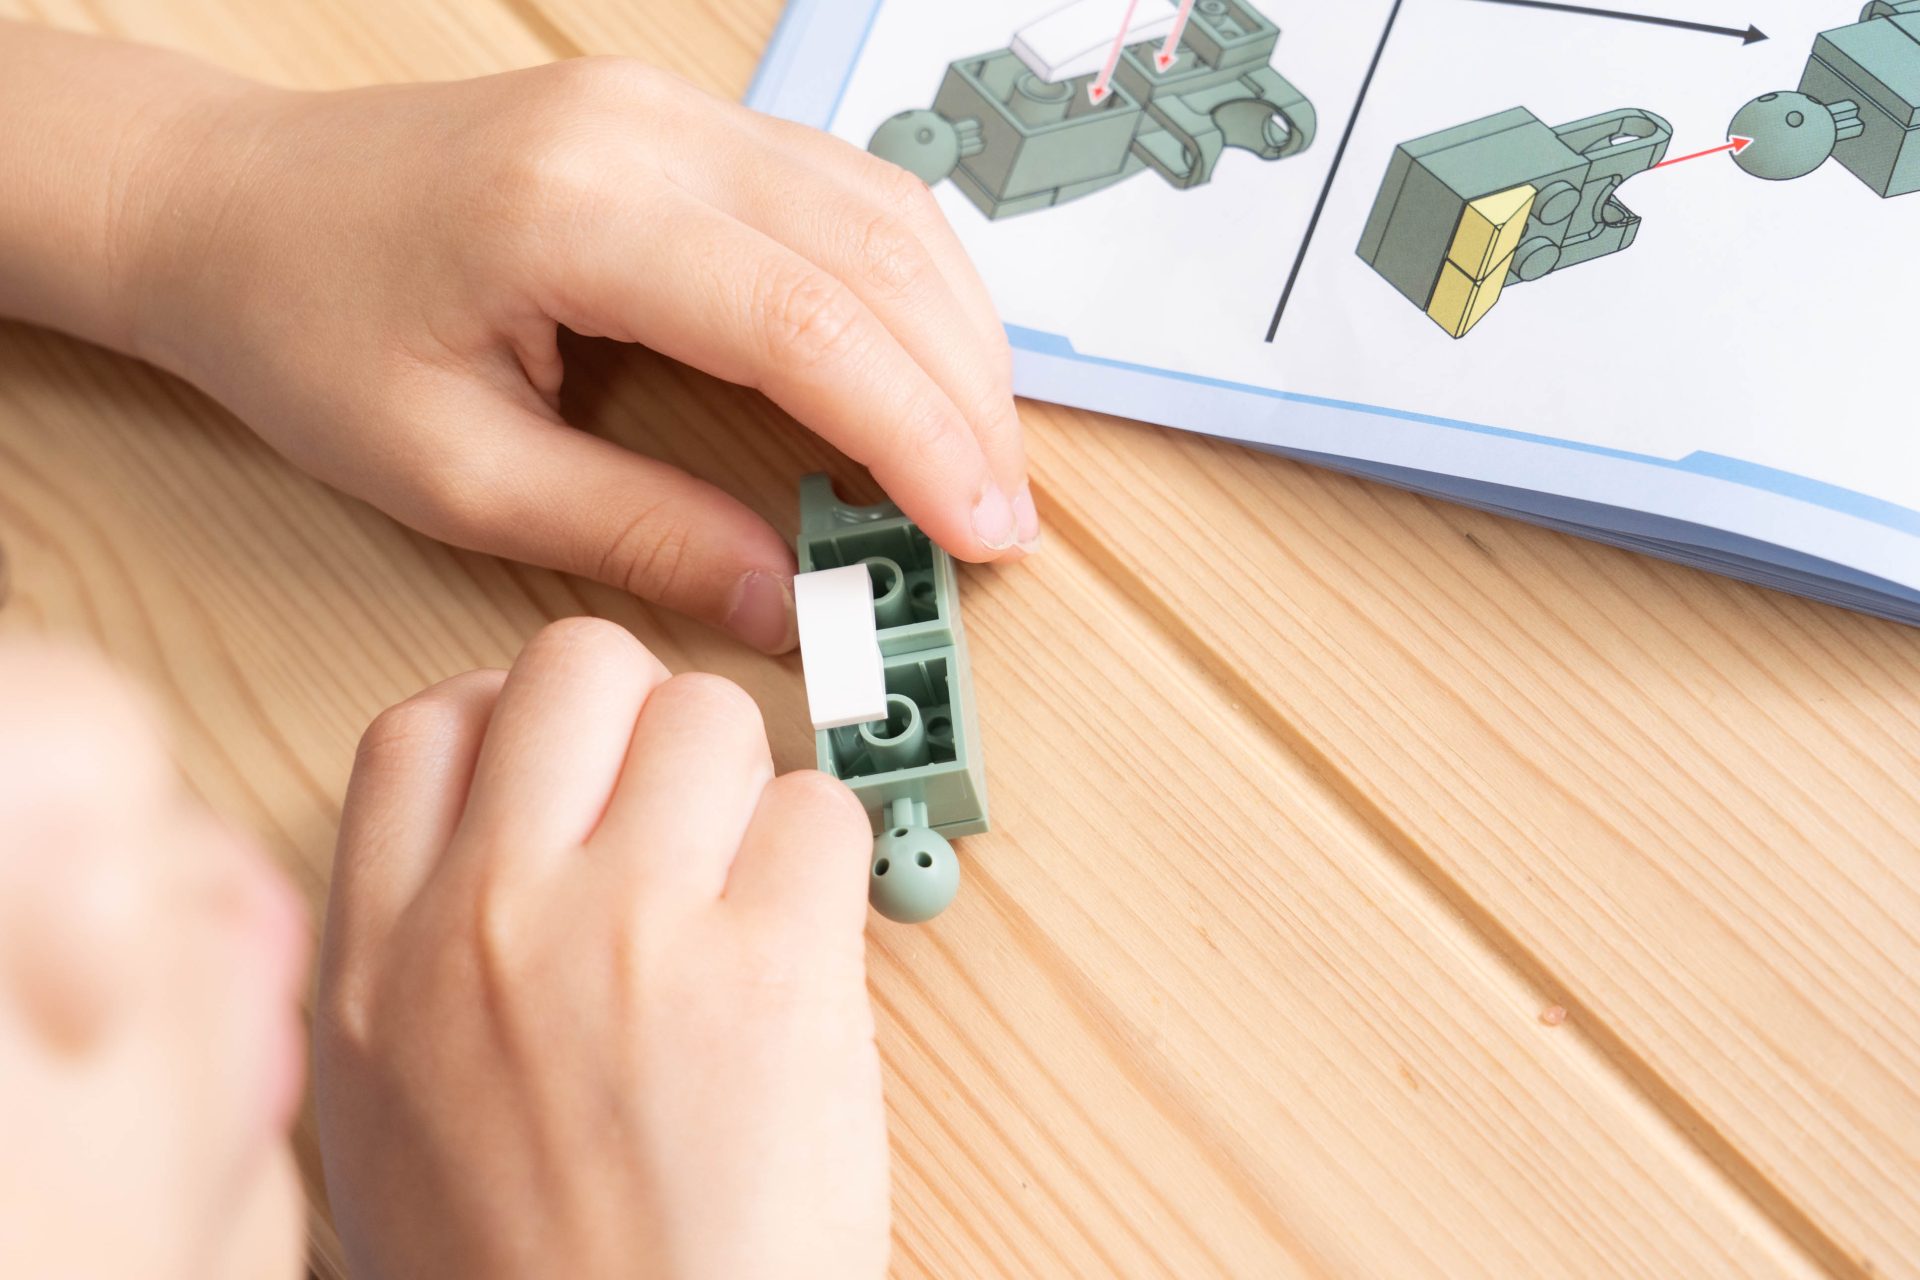 從細節玩出競爭力【日本Silverback超擬真可動積木+益智玩具+對戰遊戲】